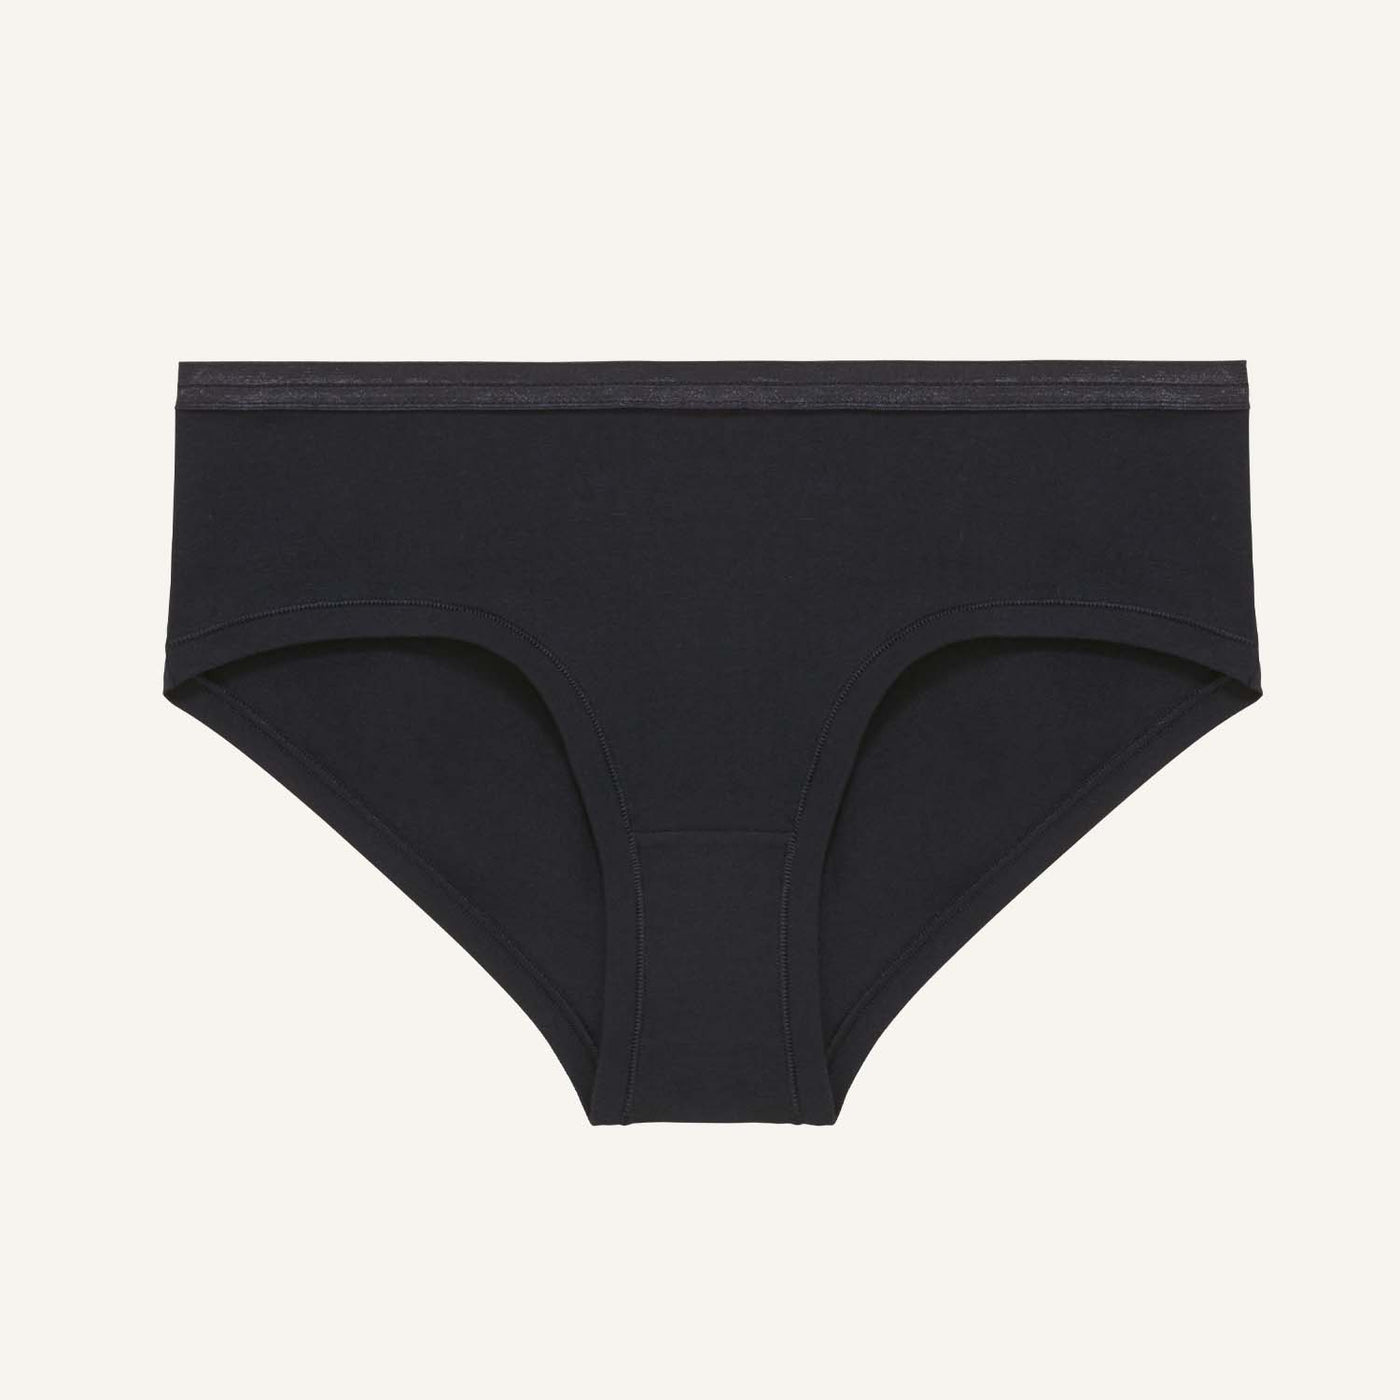 Buy Hipster Panty for Women — Revoue - Revoue - Medium